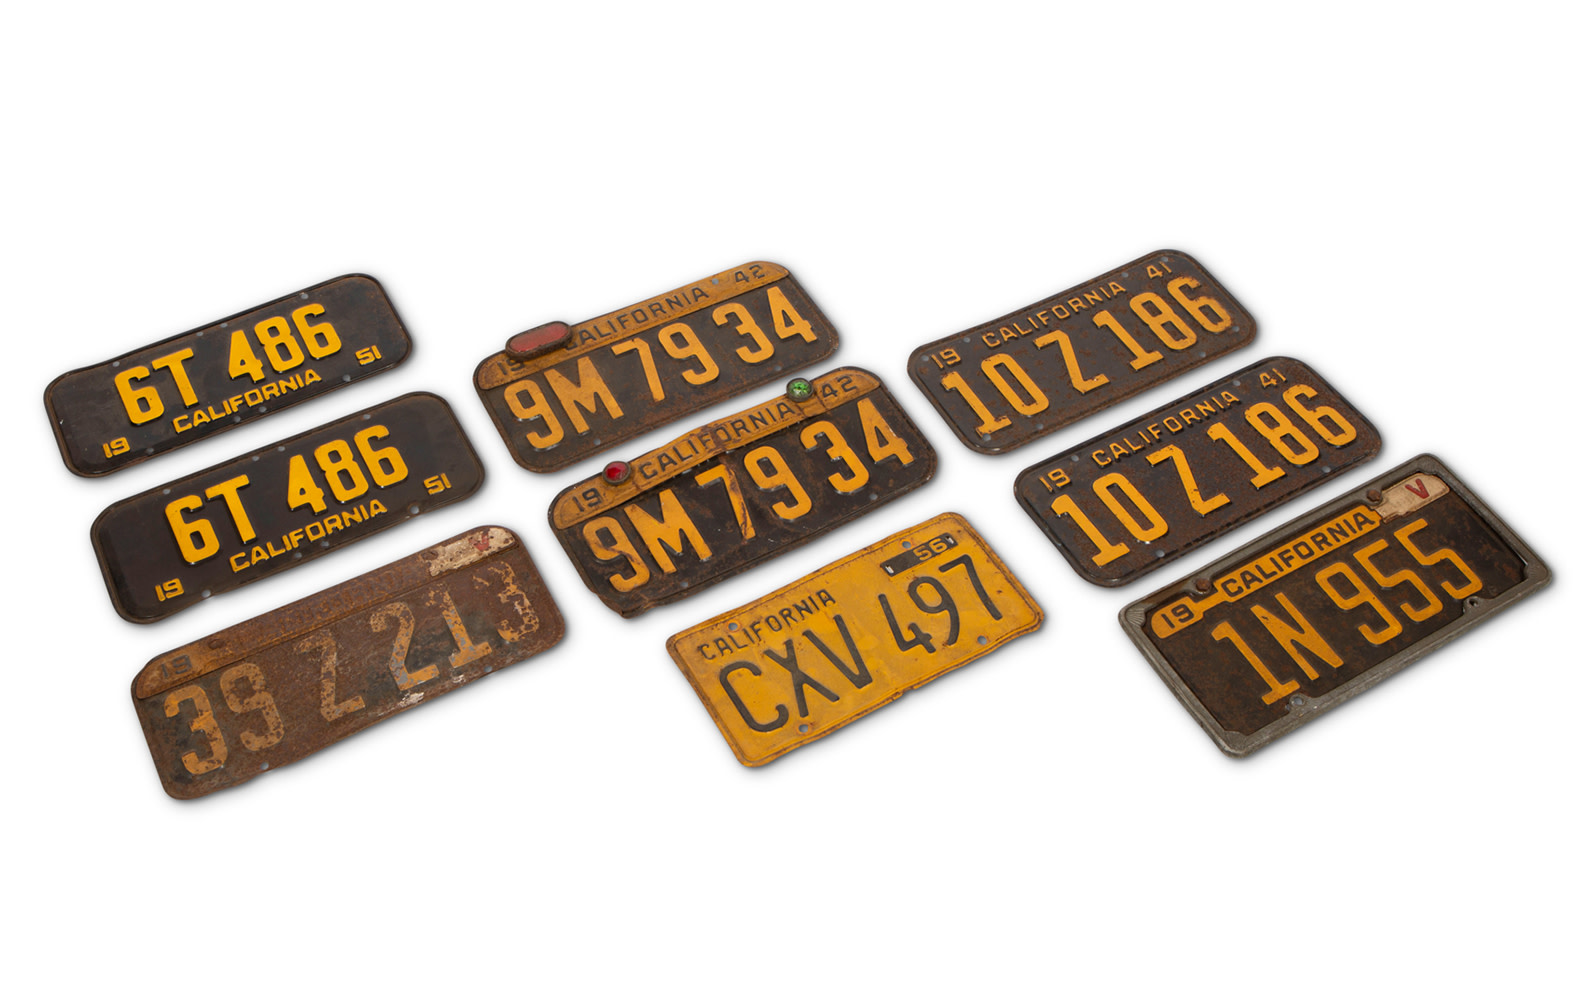 California License Plates, c. 1940s, 1950s